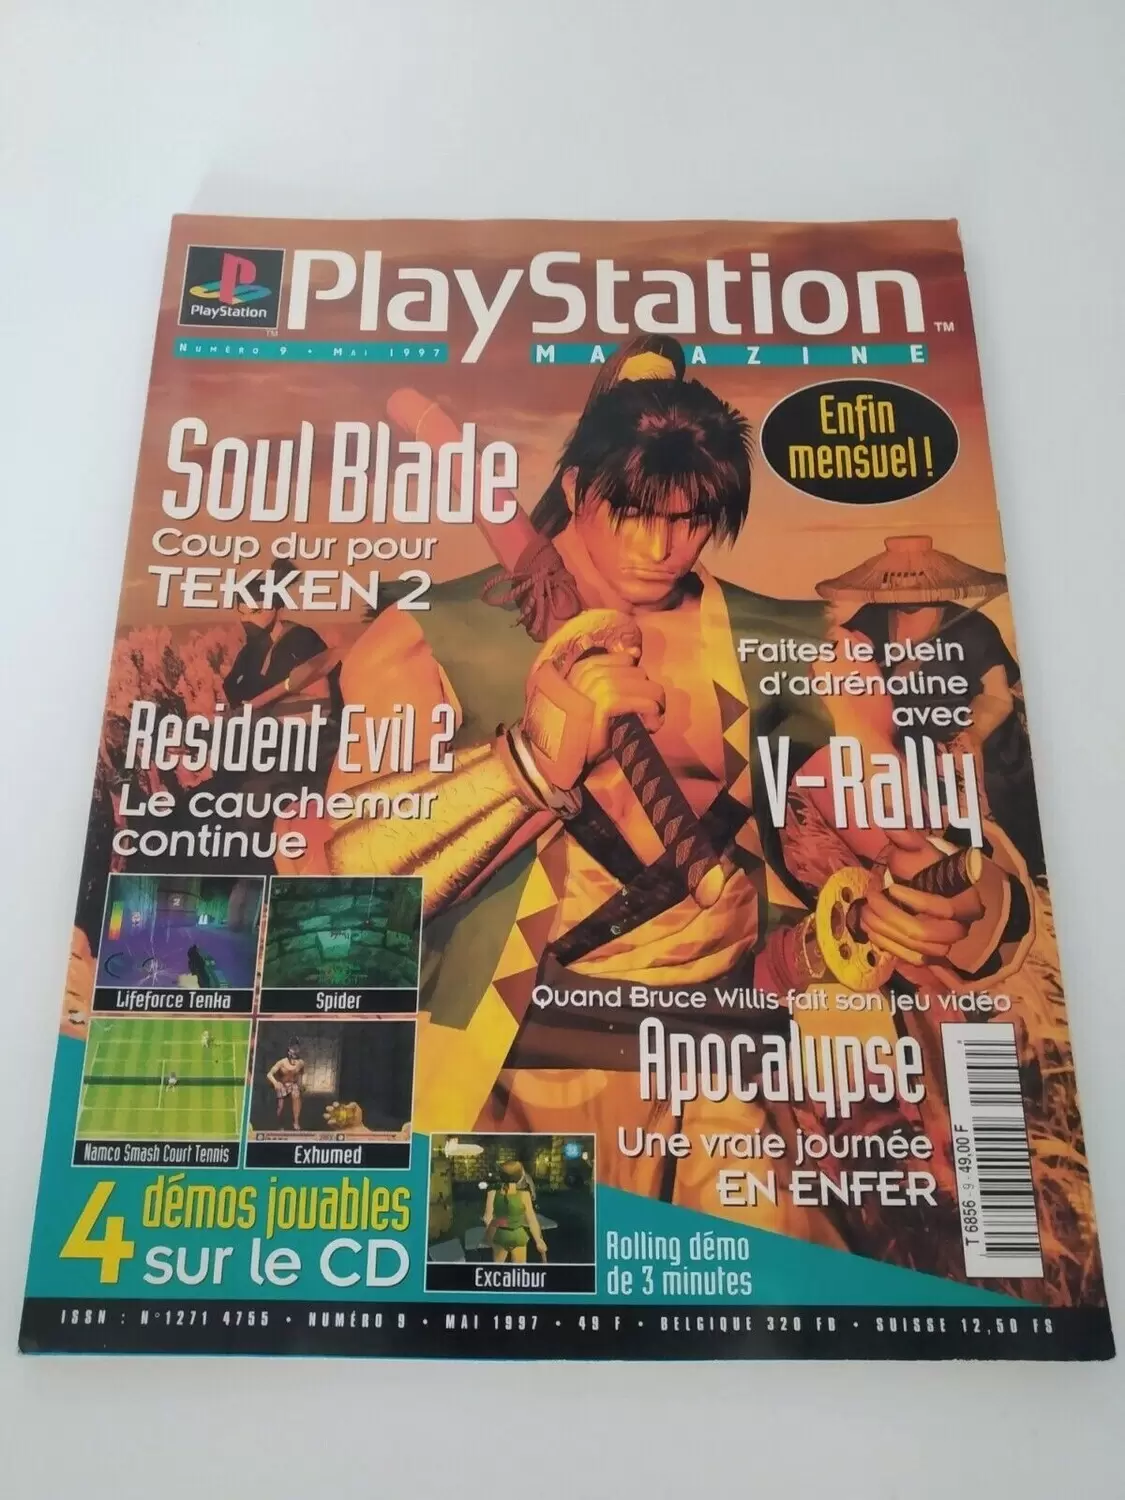 Playstation Magazine - Playstation Magazine #09